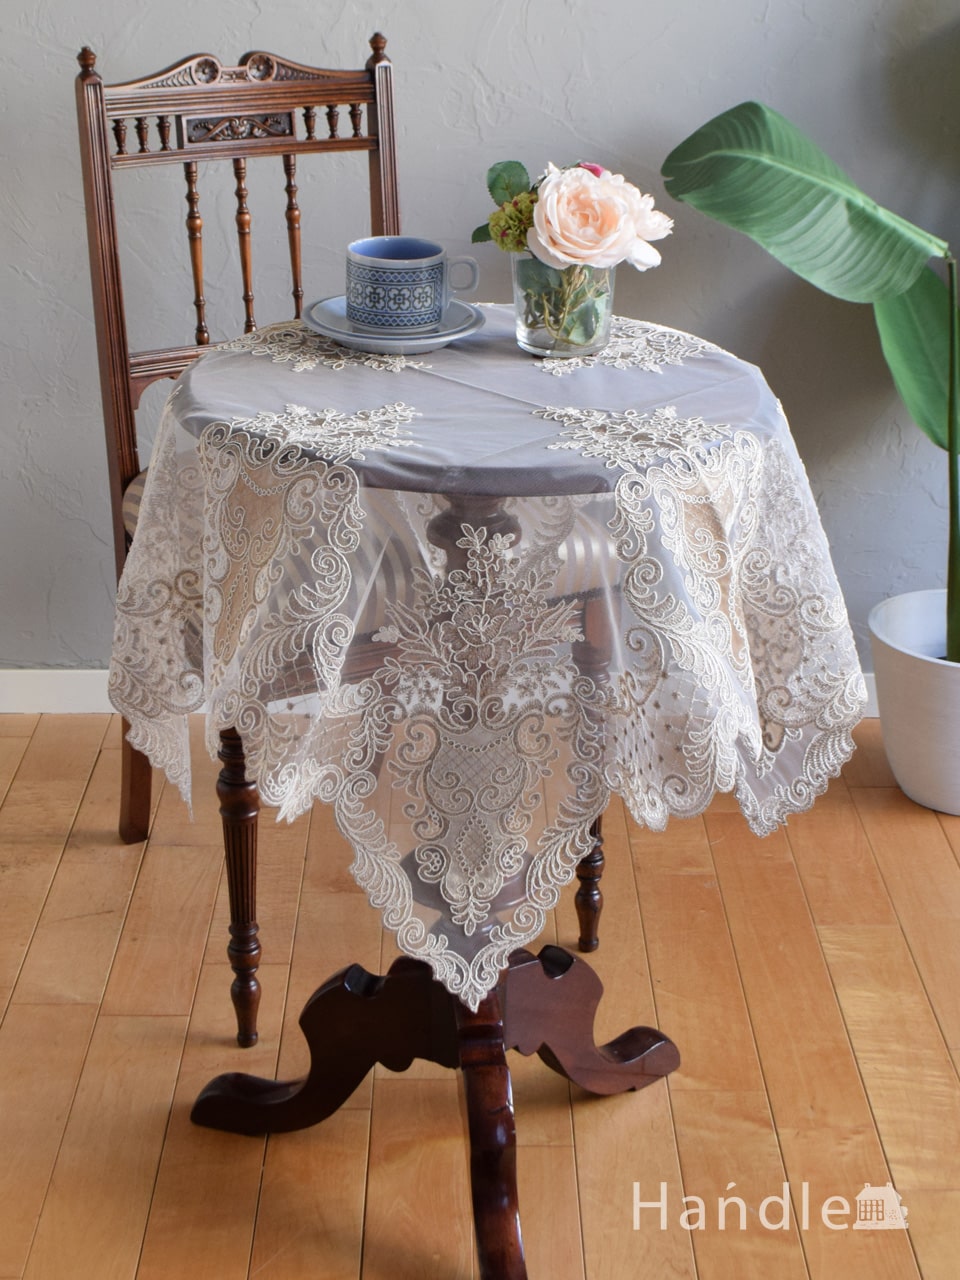 フレンチアンティーク風の美しいテーブルクロス、華やかな刺繍の入った